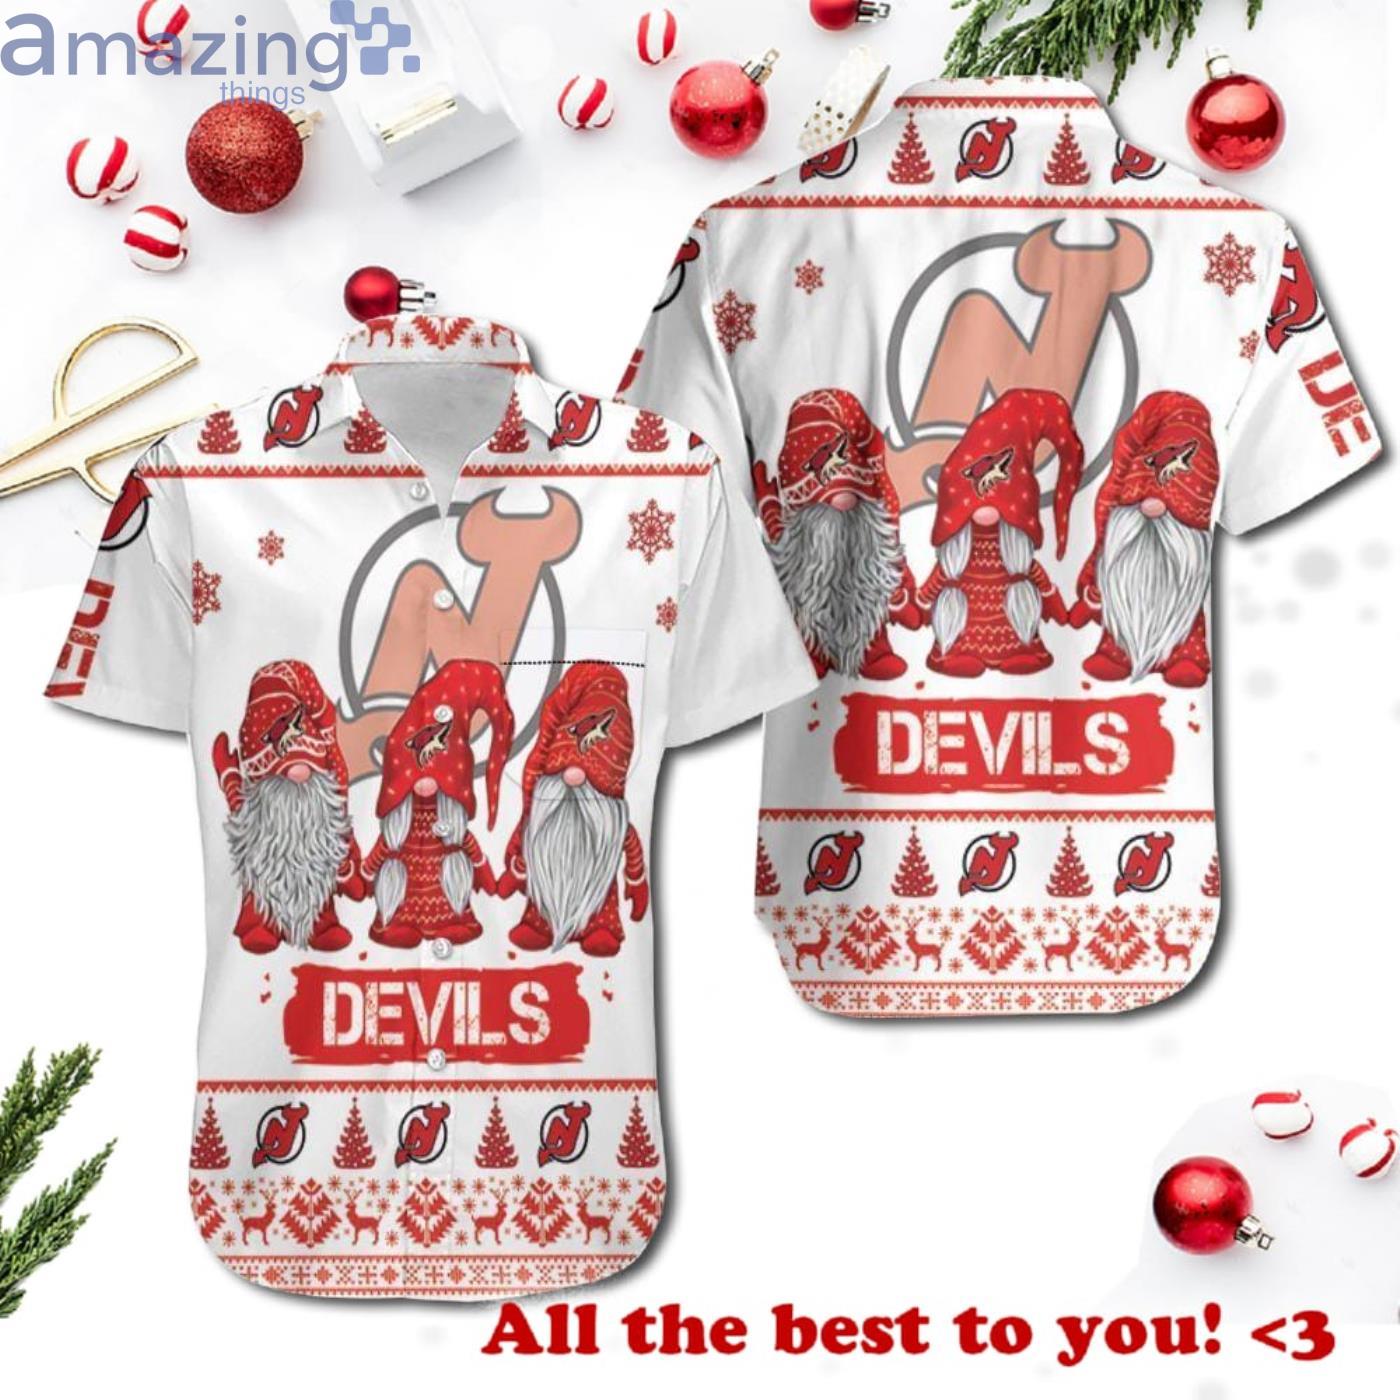 New Jersey Devils Nightwear, Devils Sleepwear